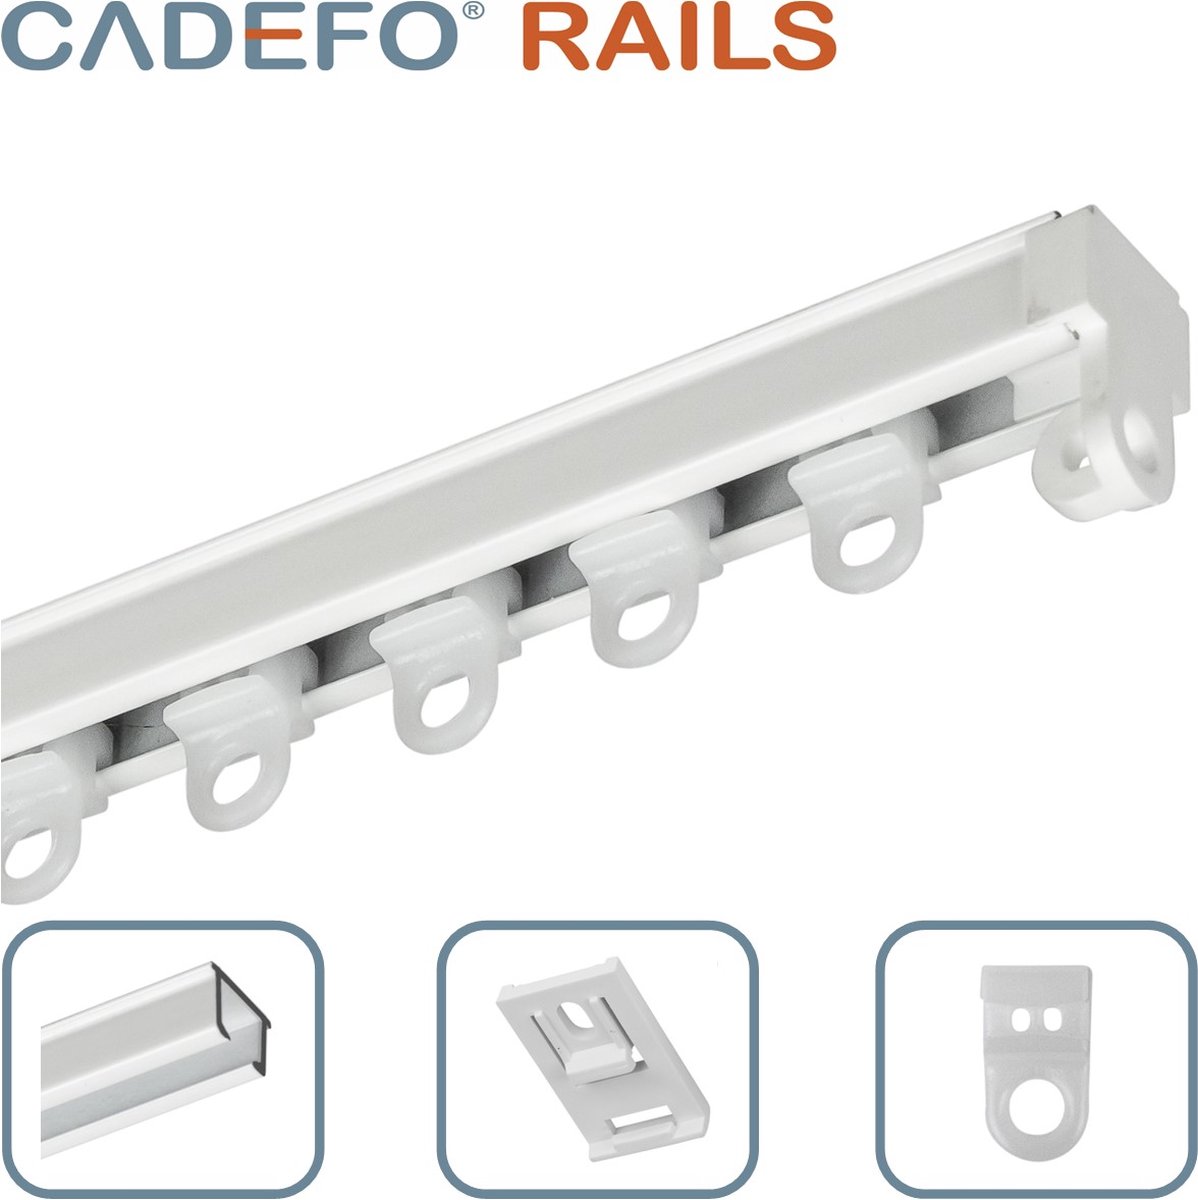 CADEFO RAILS (501 - 550 cm) Gordijnrails - Compleet op maat! - UIT 1 STUK - Leverbaar tot 6 meter - Plafondbevestiging - Lengte 502 cm